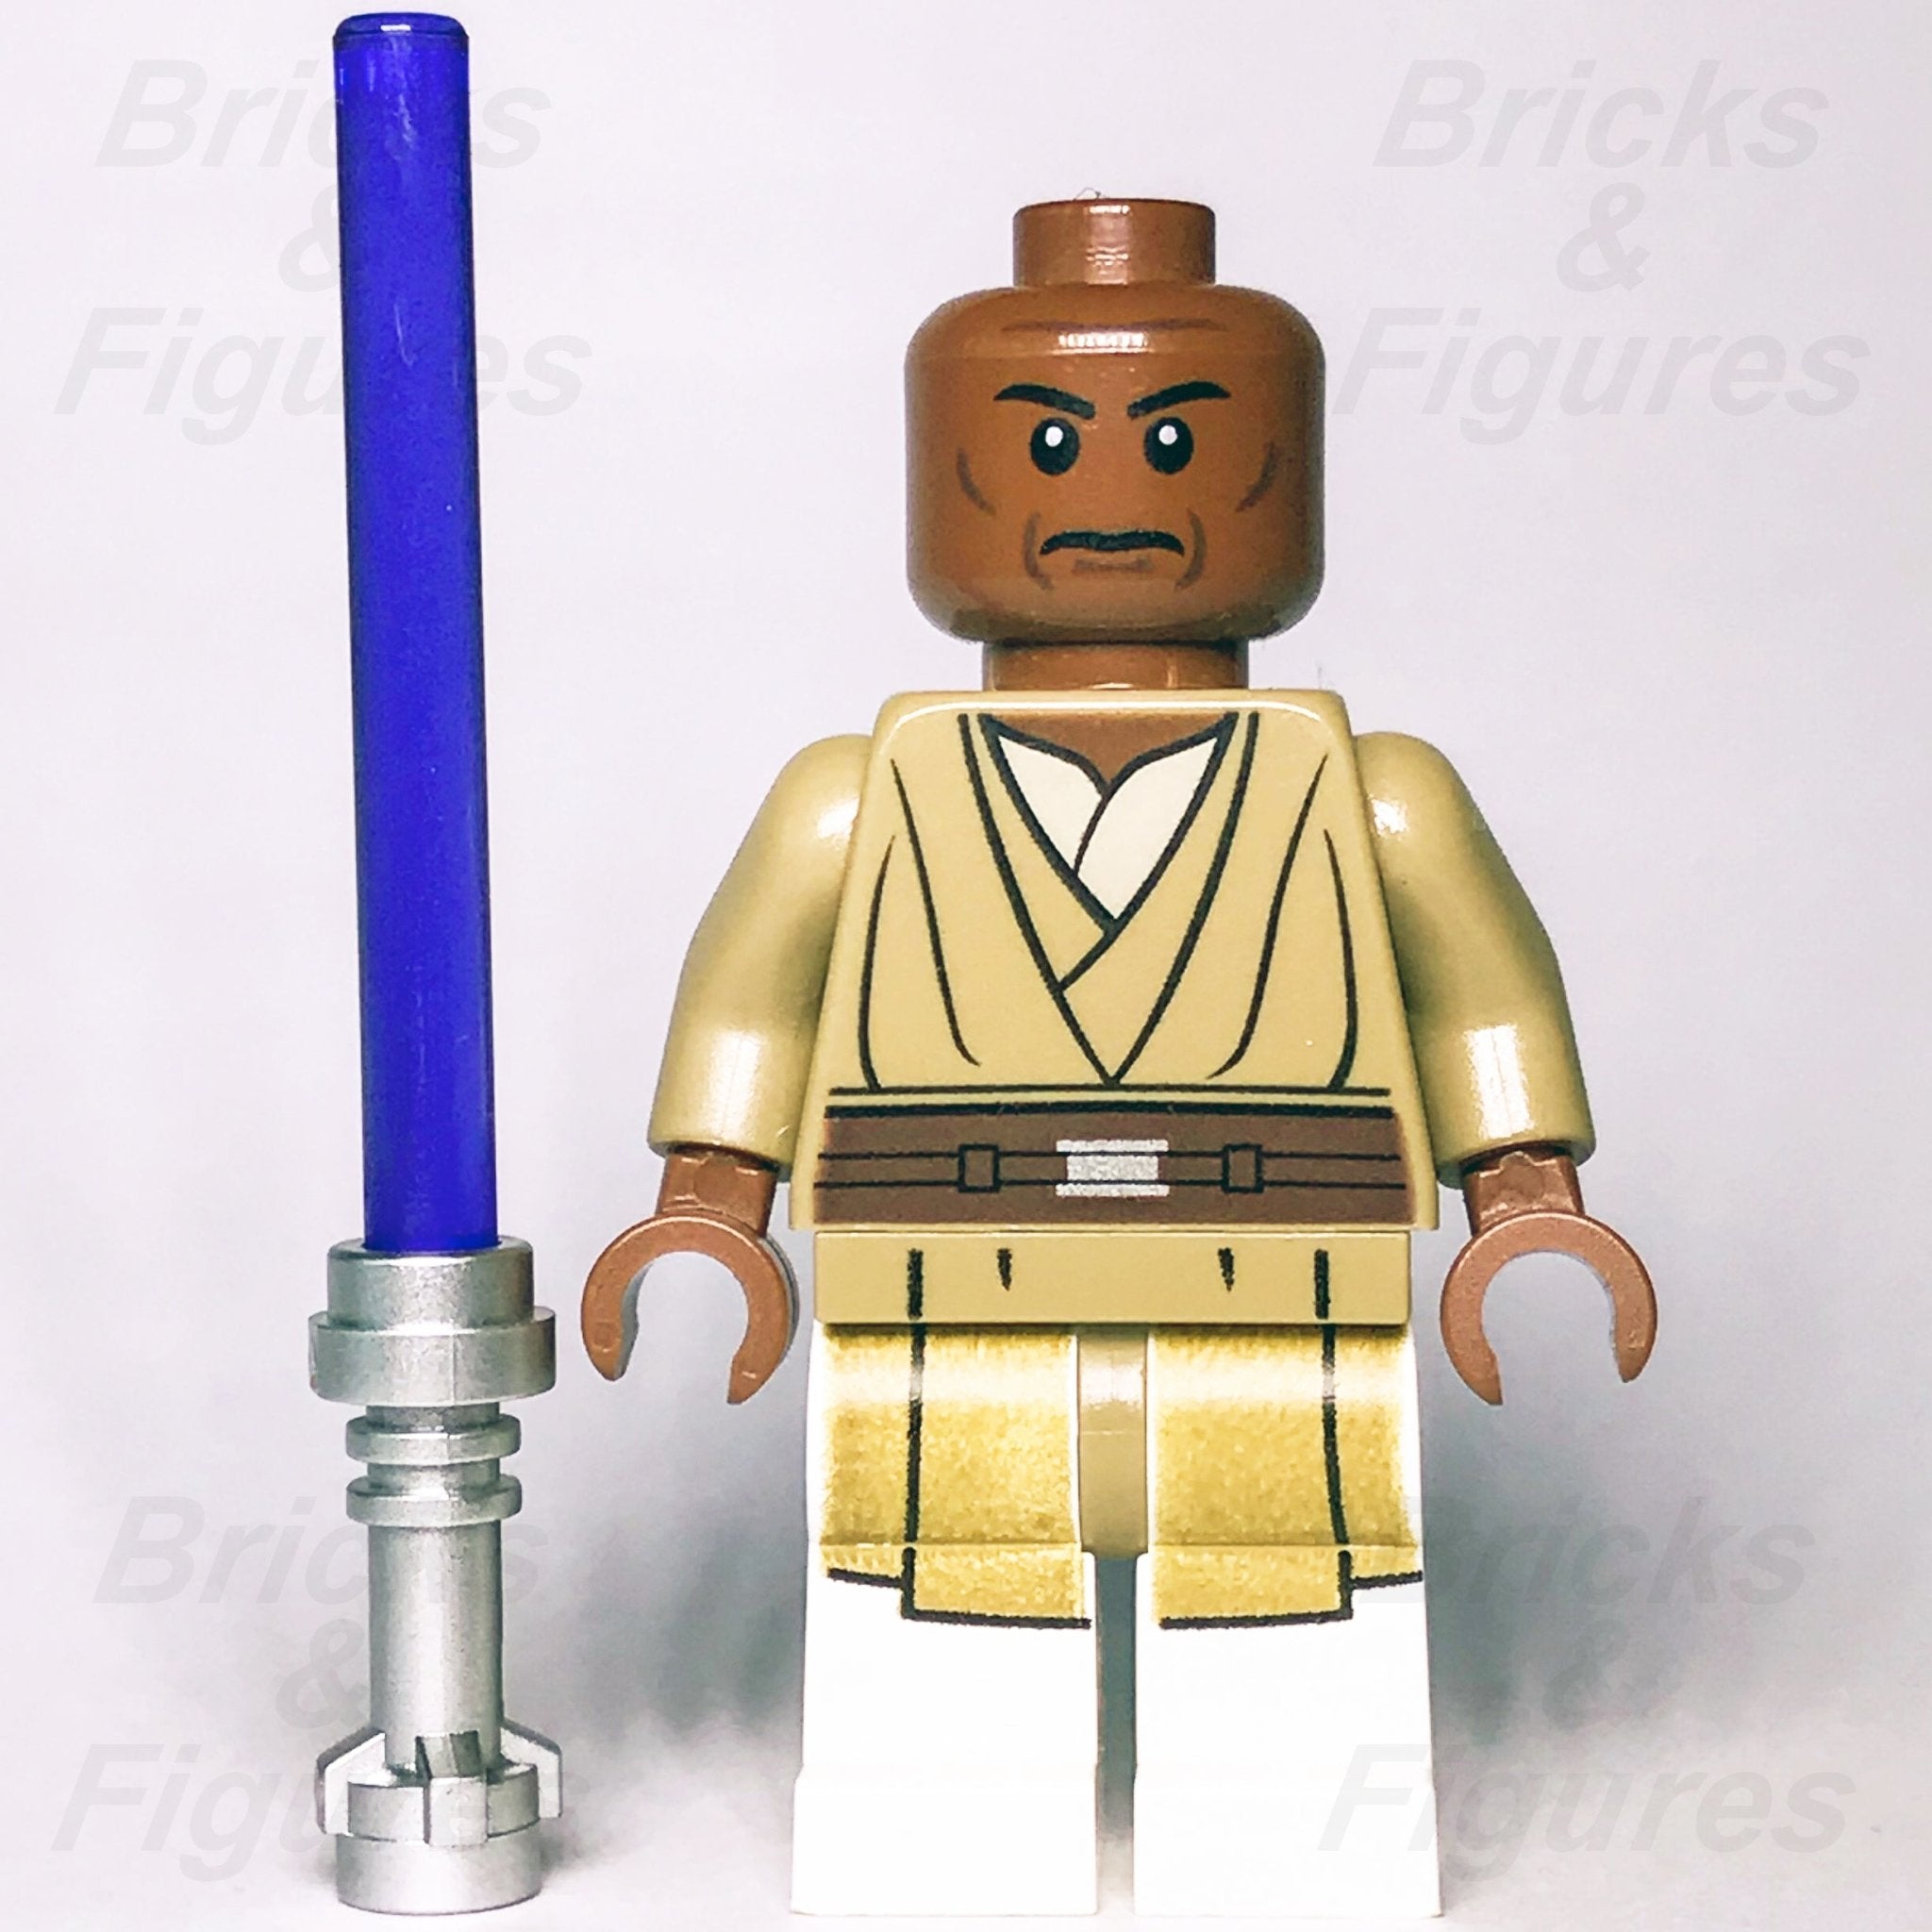 New Star Wars LEGO Mace Windu Jedi Master Clone Wars General Minifigure 75019 - Bricks & Figures